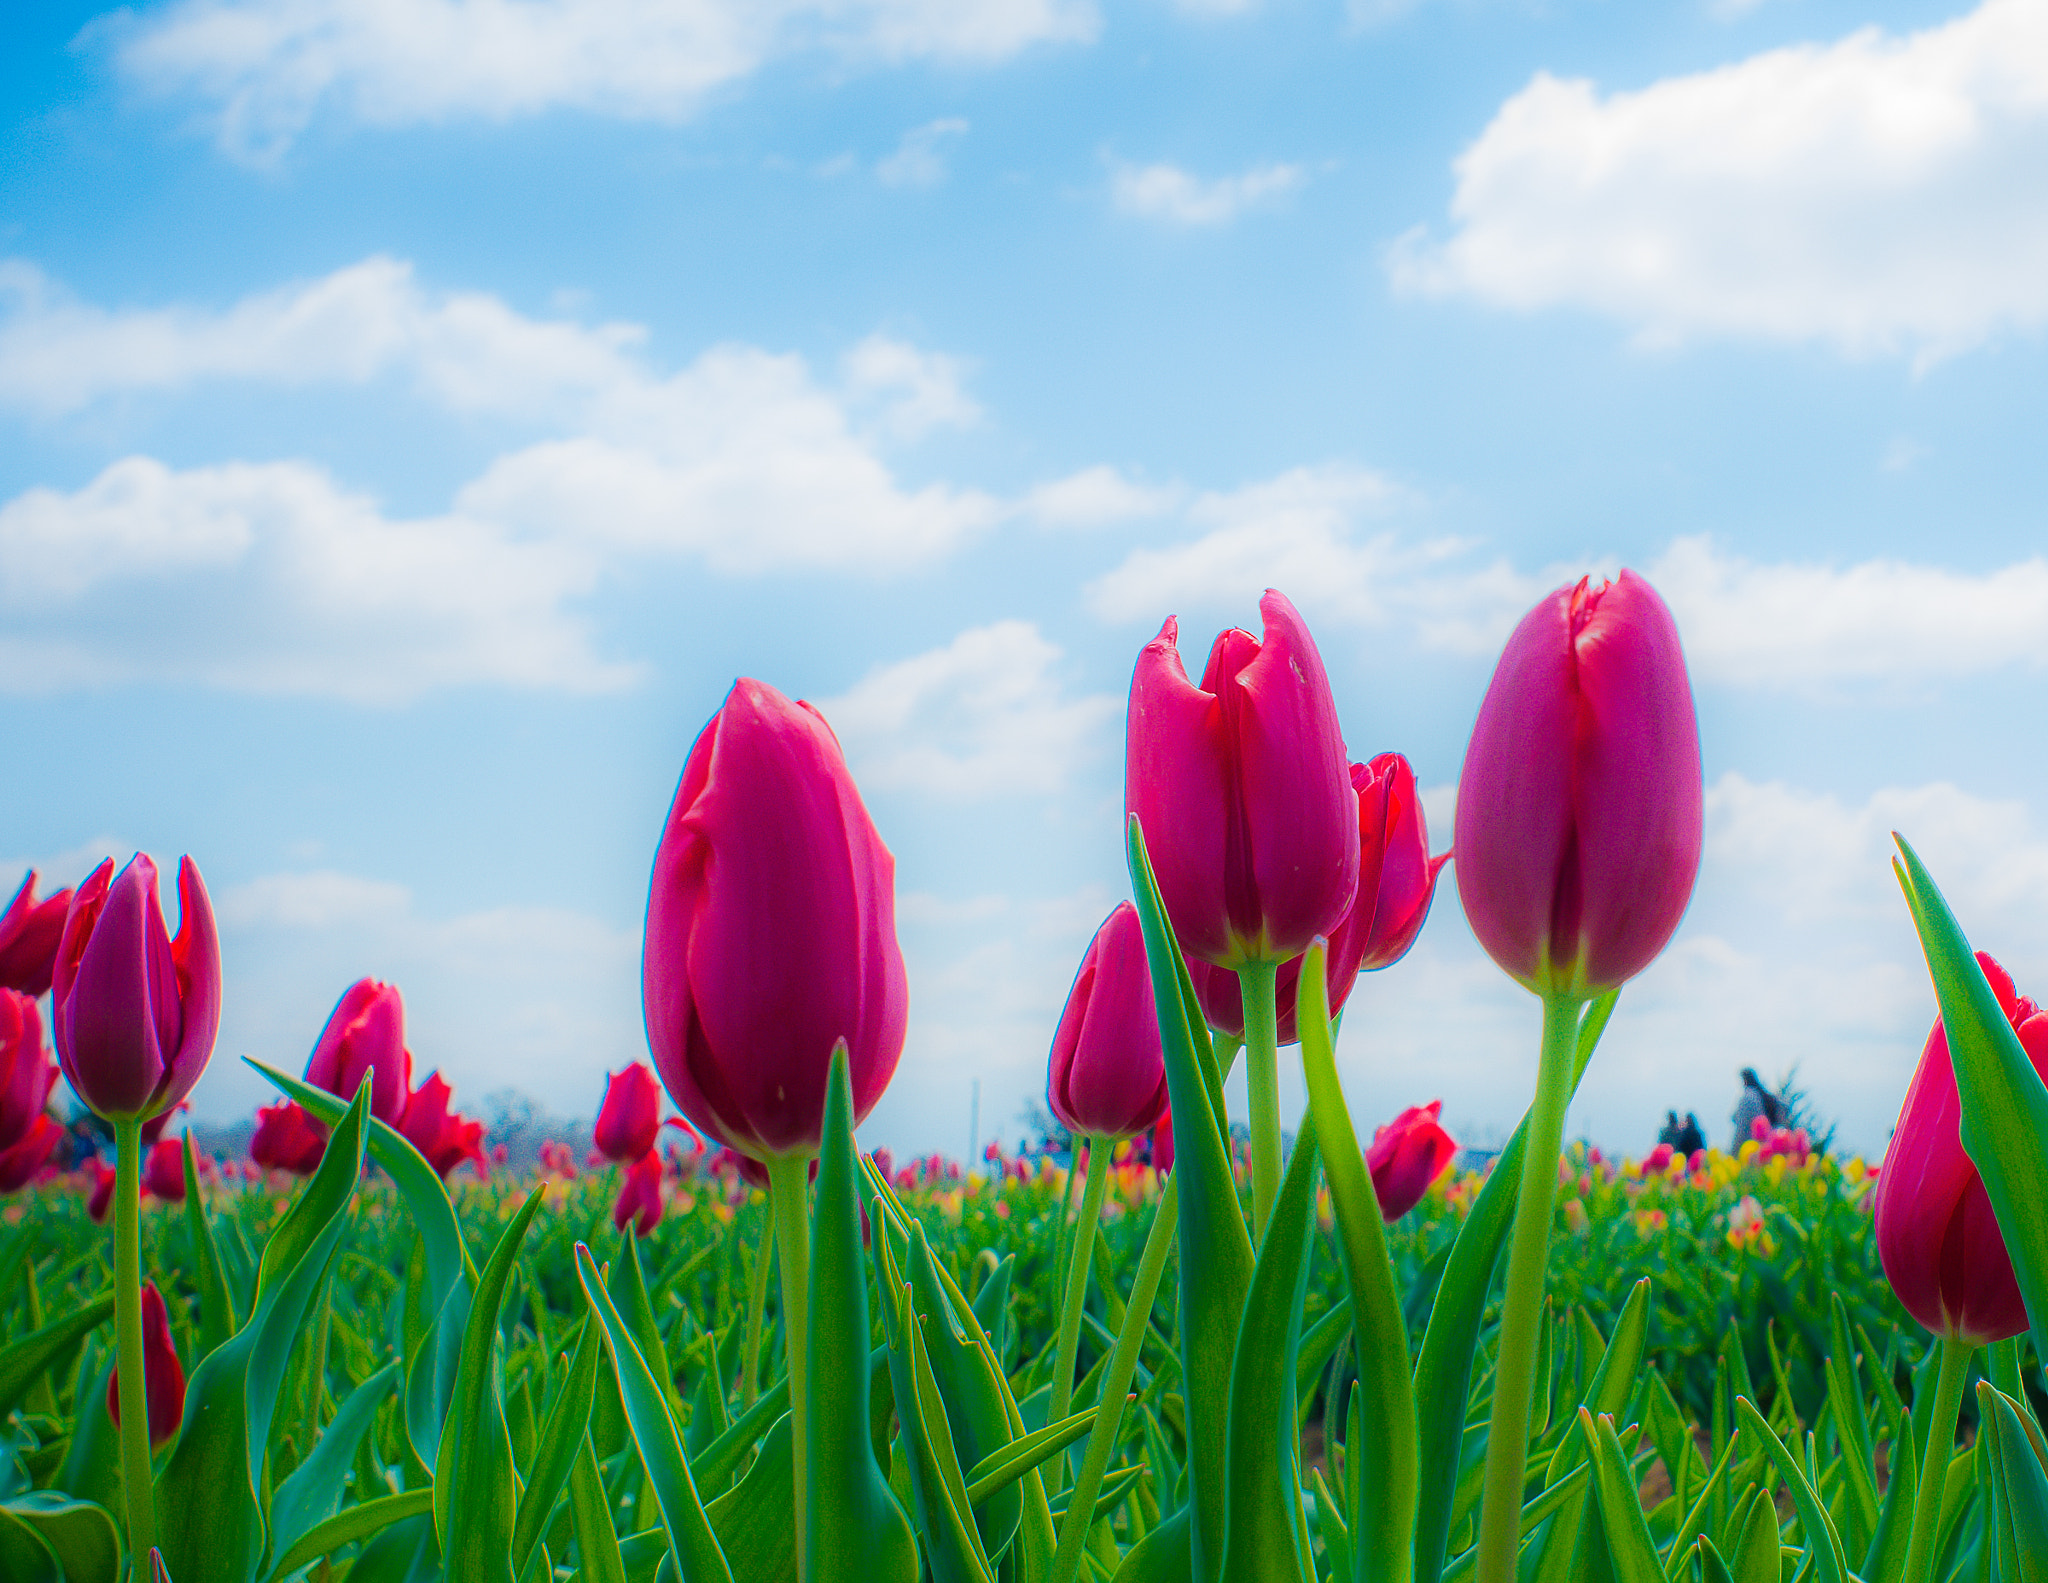 Nikon AF Nikkor 24mm F2.8D sample photo. Tulips under blue sky photography